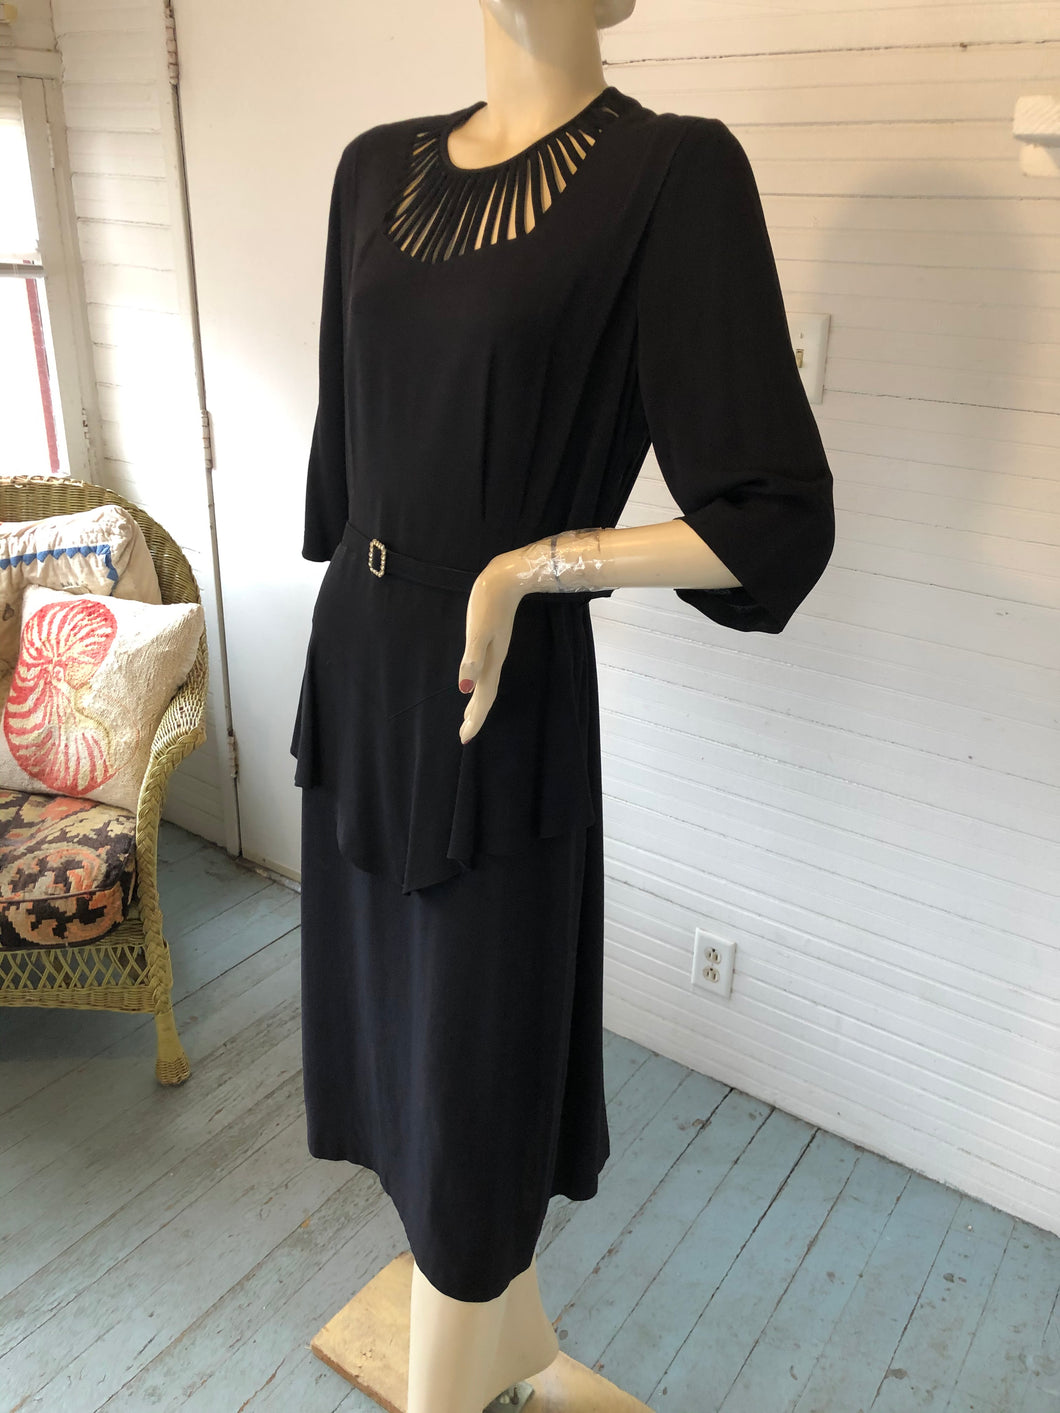 Vintage 1940s Black Crepe Dress with Peplum, size L/XL (42-34-41)